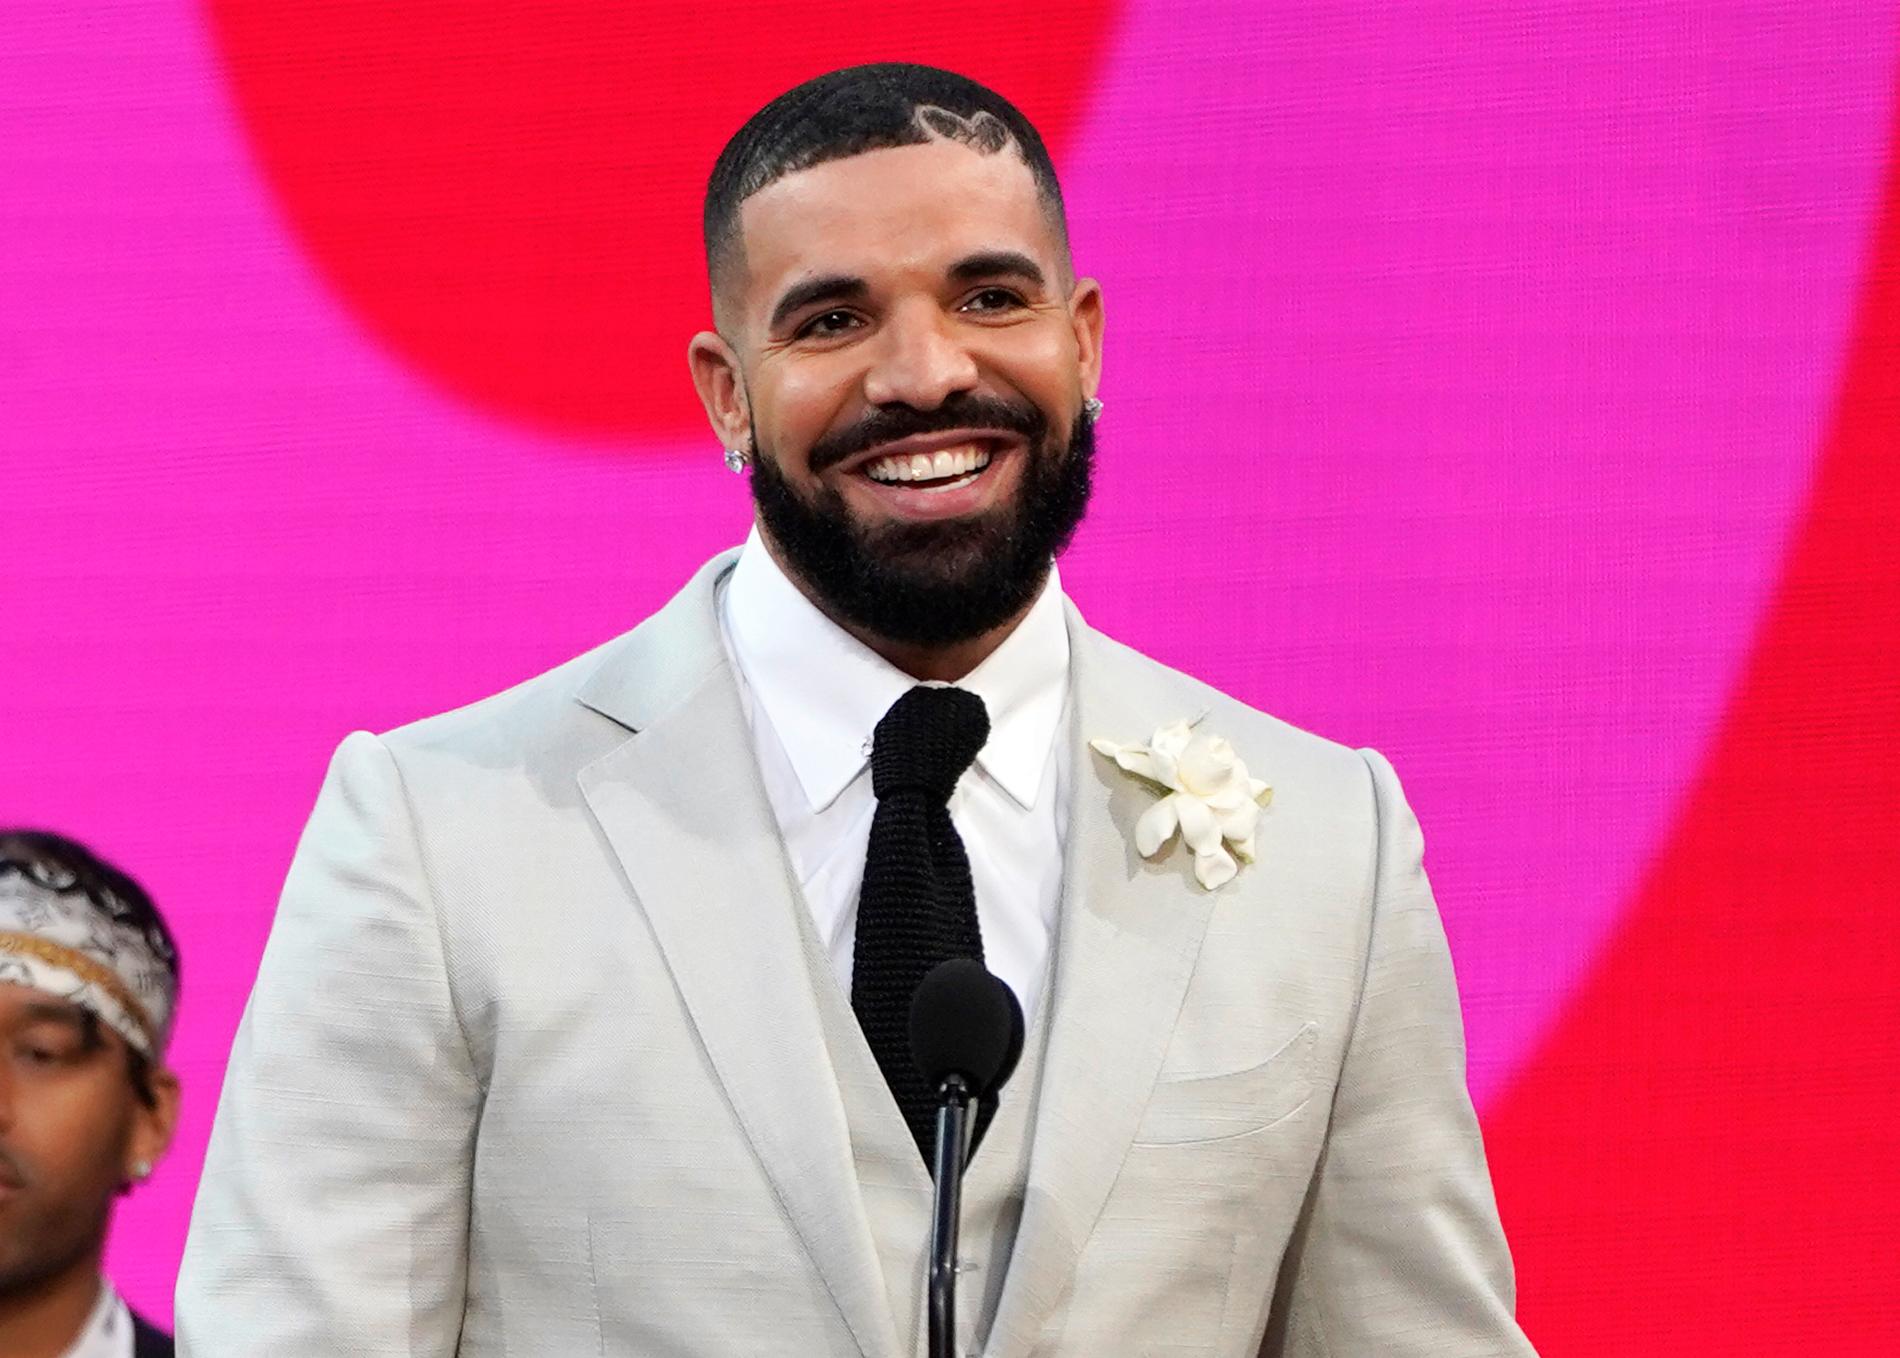 Drake har fått föremål kastade mot sig under flera konserter under sommaren. 